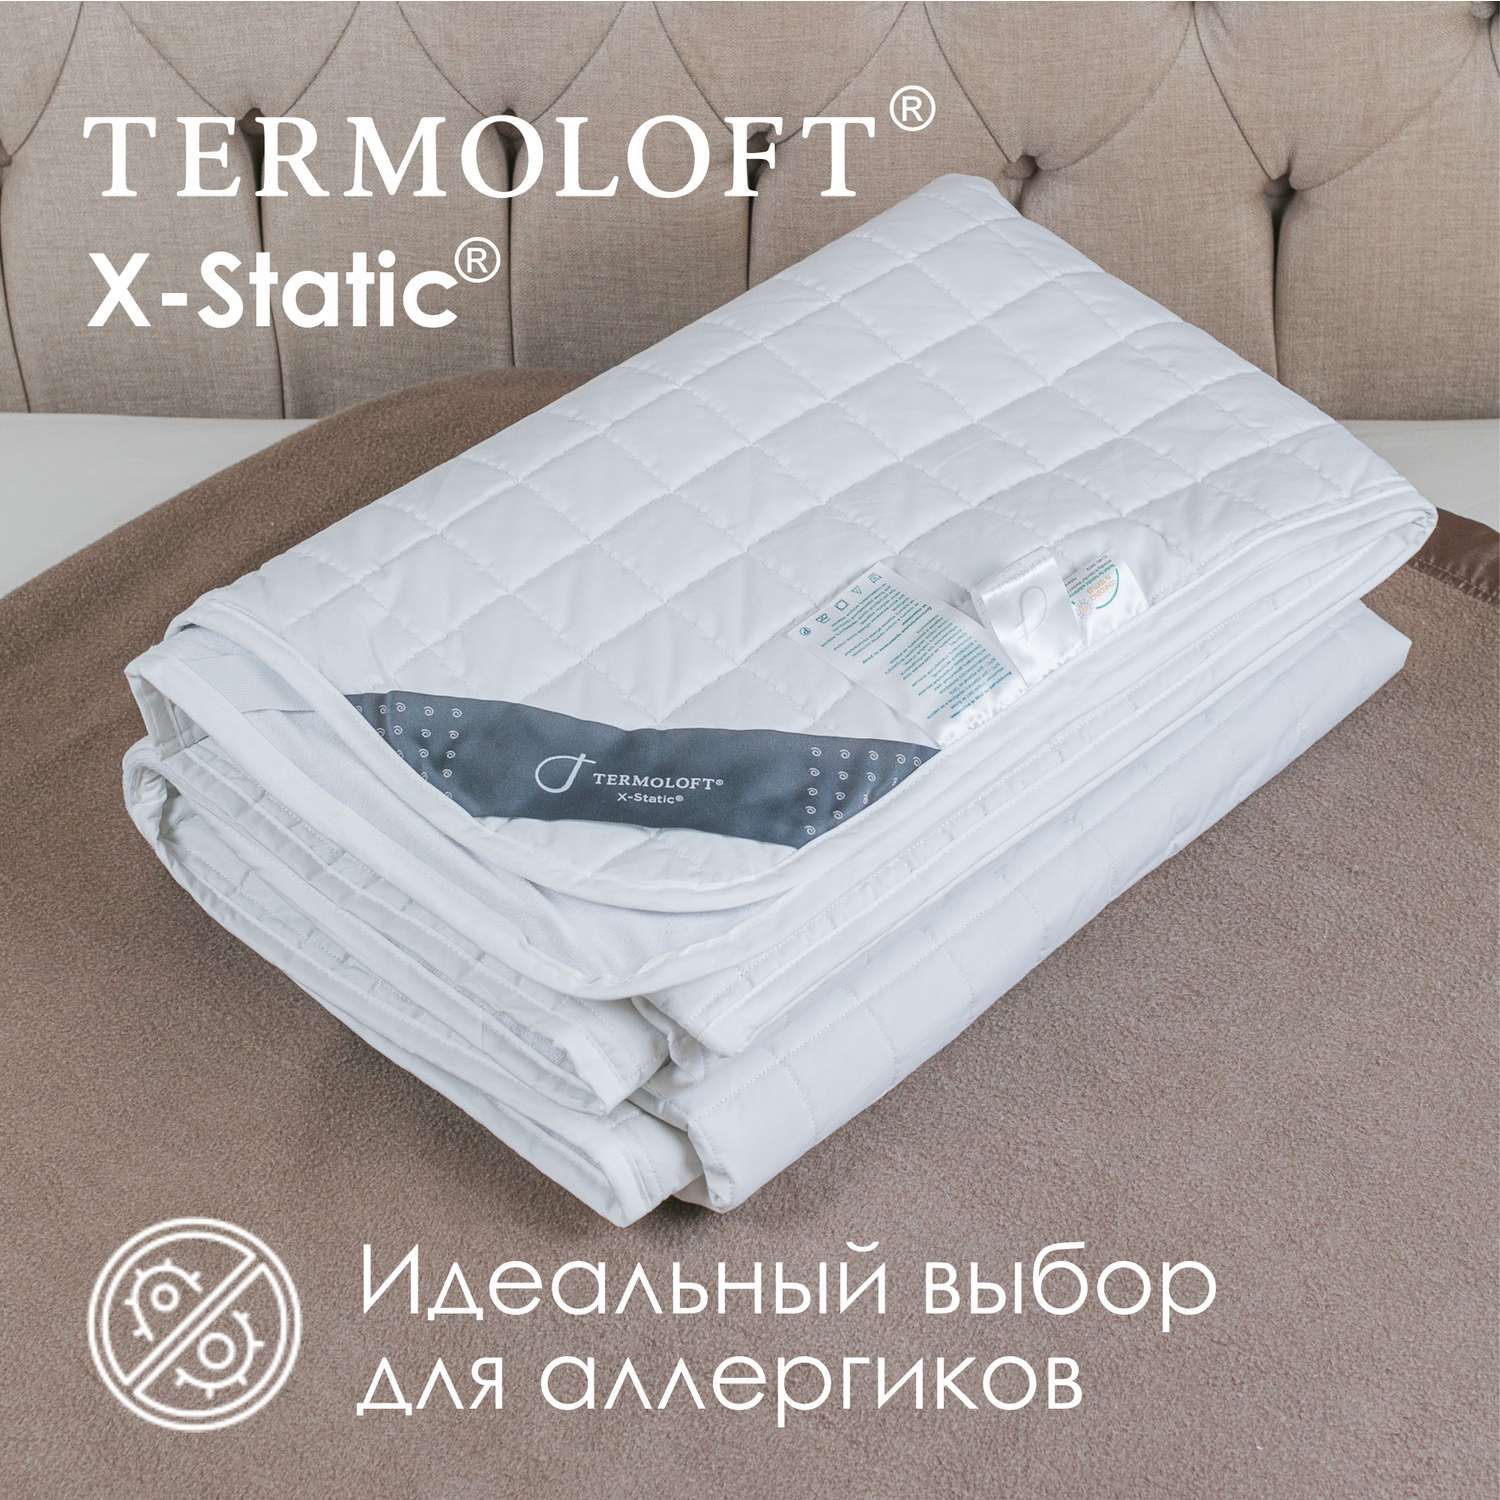 Наматрасник Termoloft X-Static с волокнами серебра 220х200 - фото 2